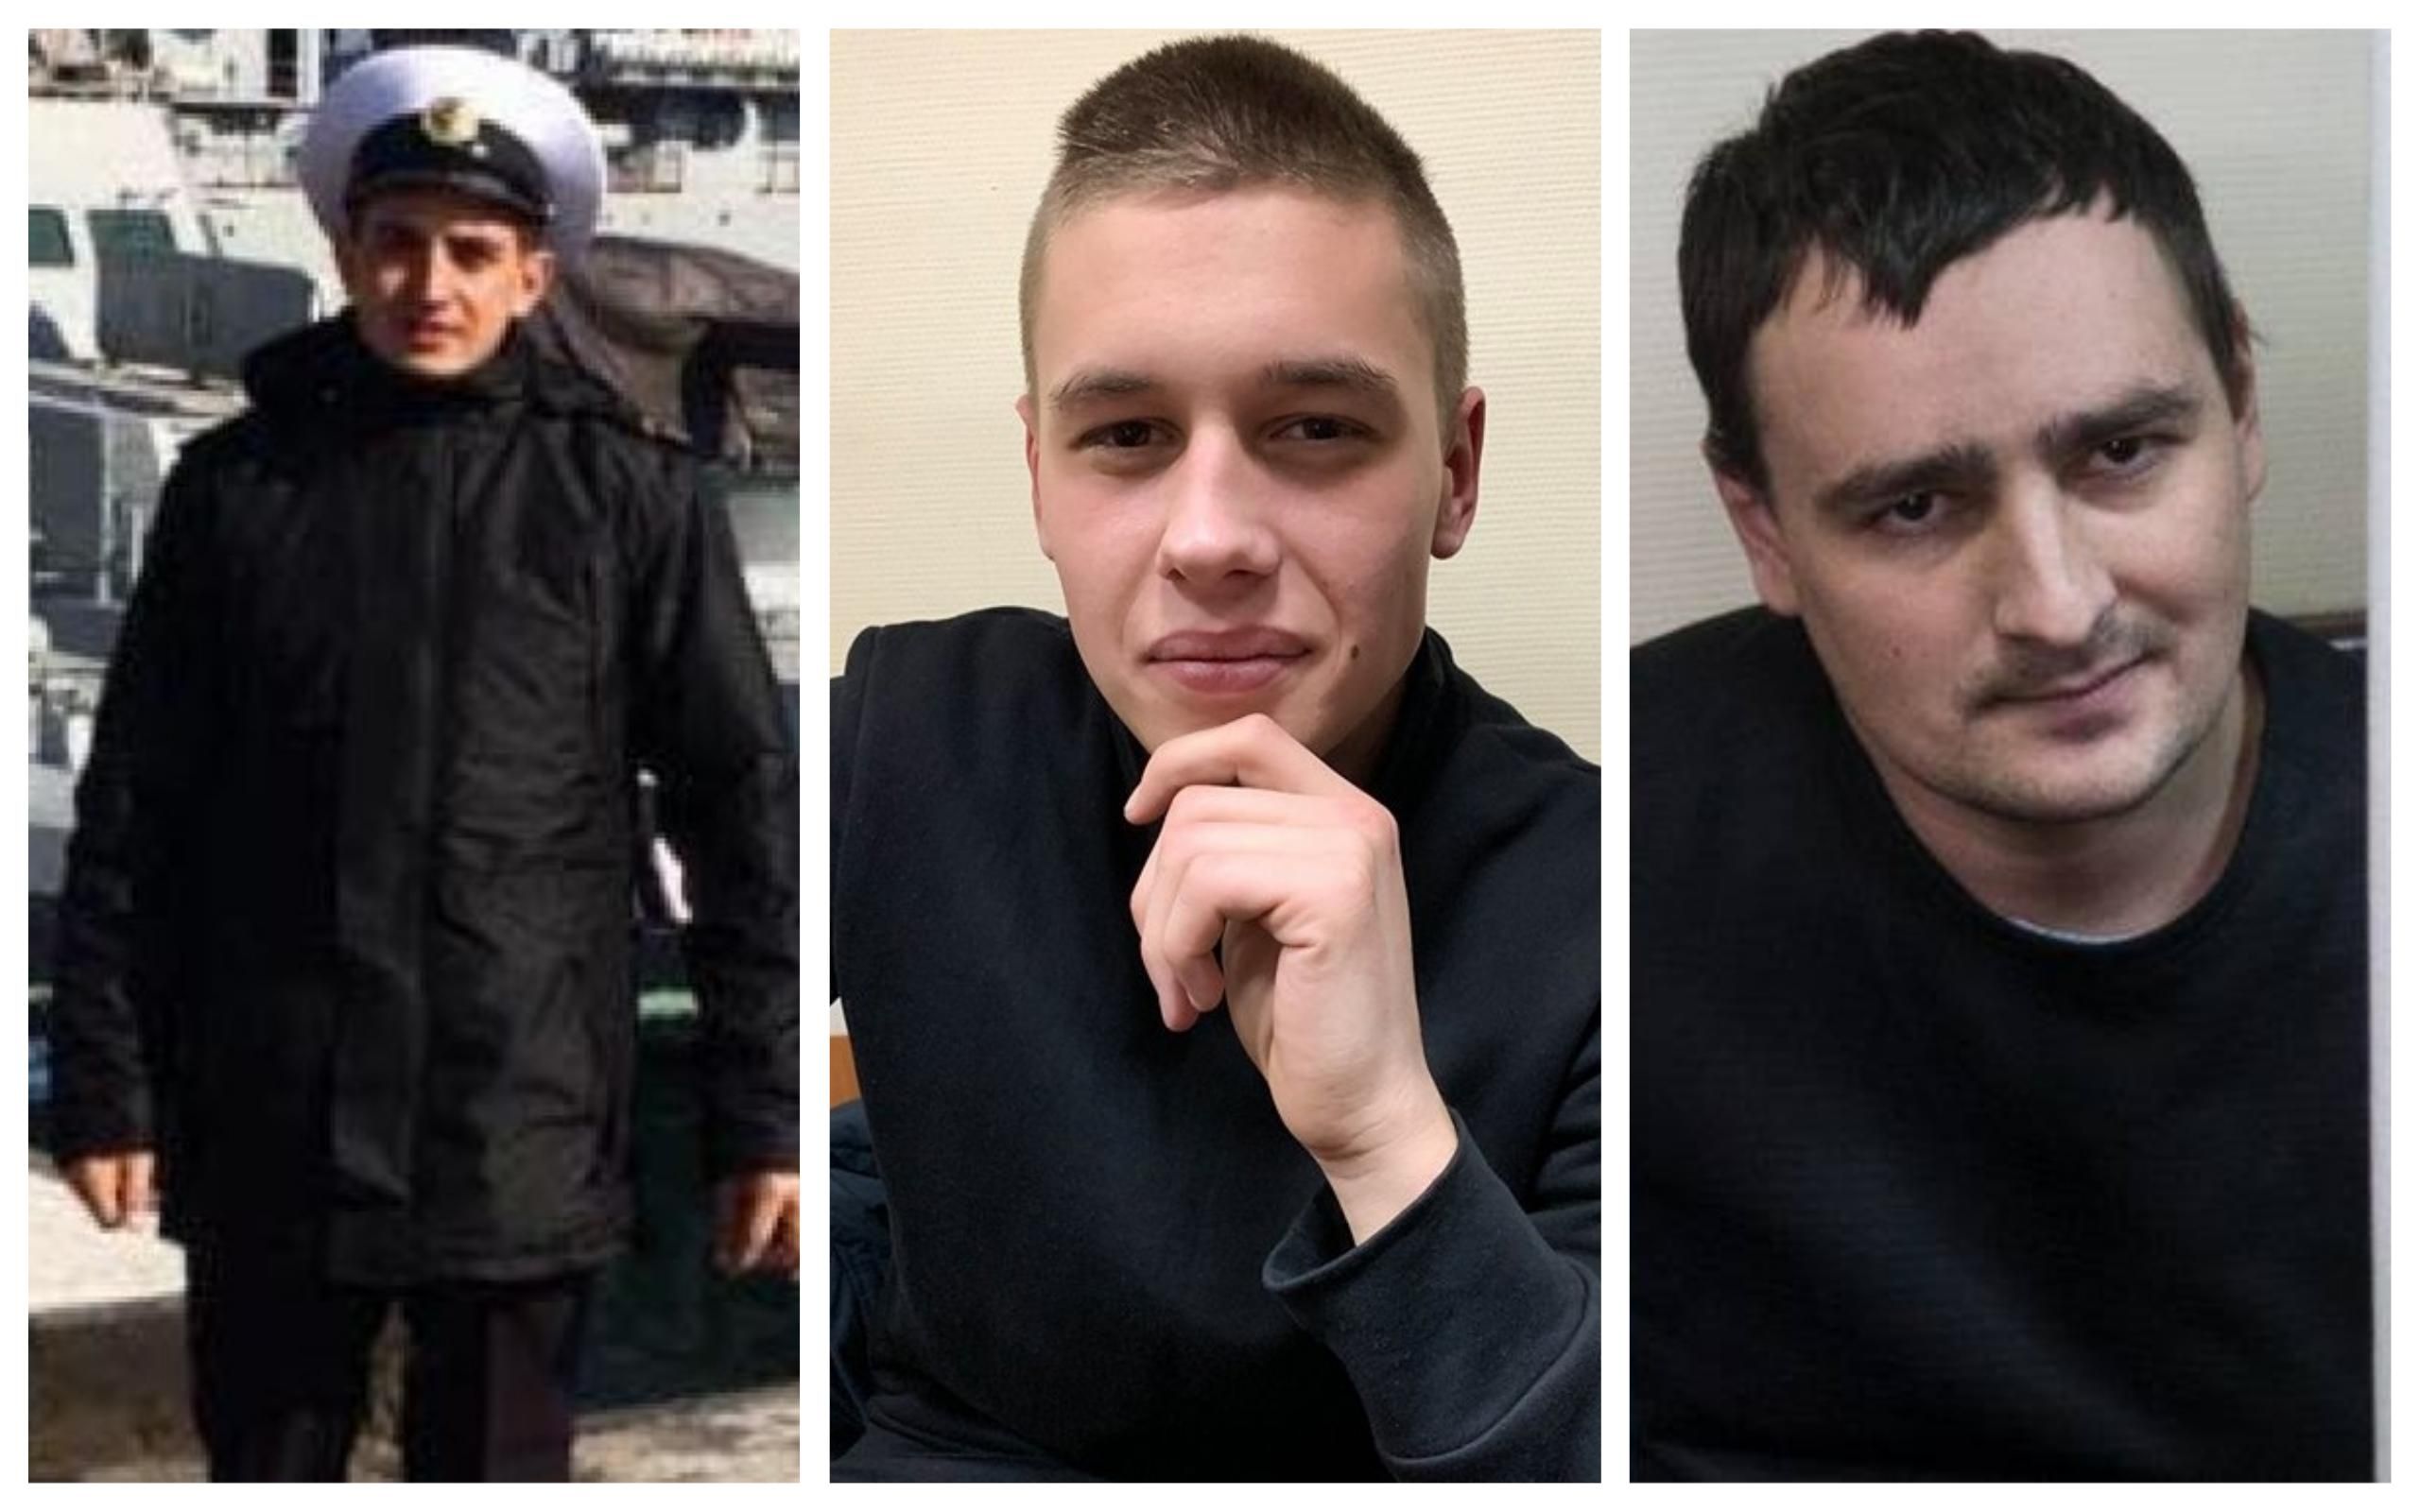 Досі є осколки скла в ранах: адвокат полонених українських моряків розповів про їхнє здоров’я  